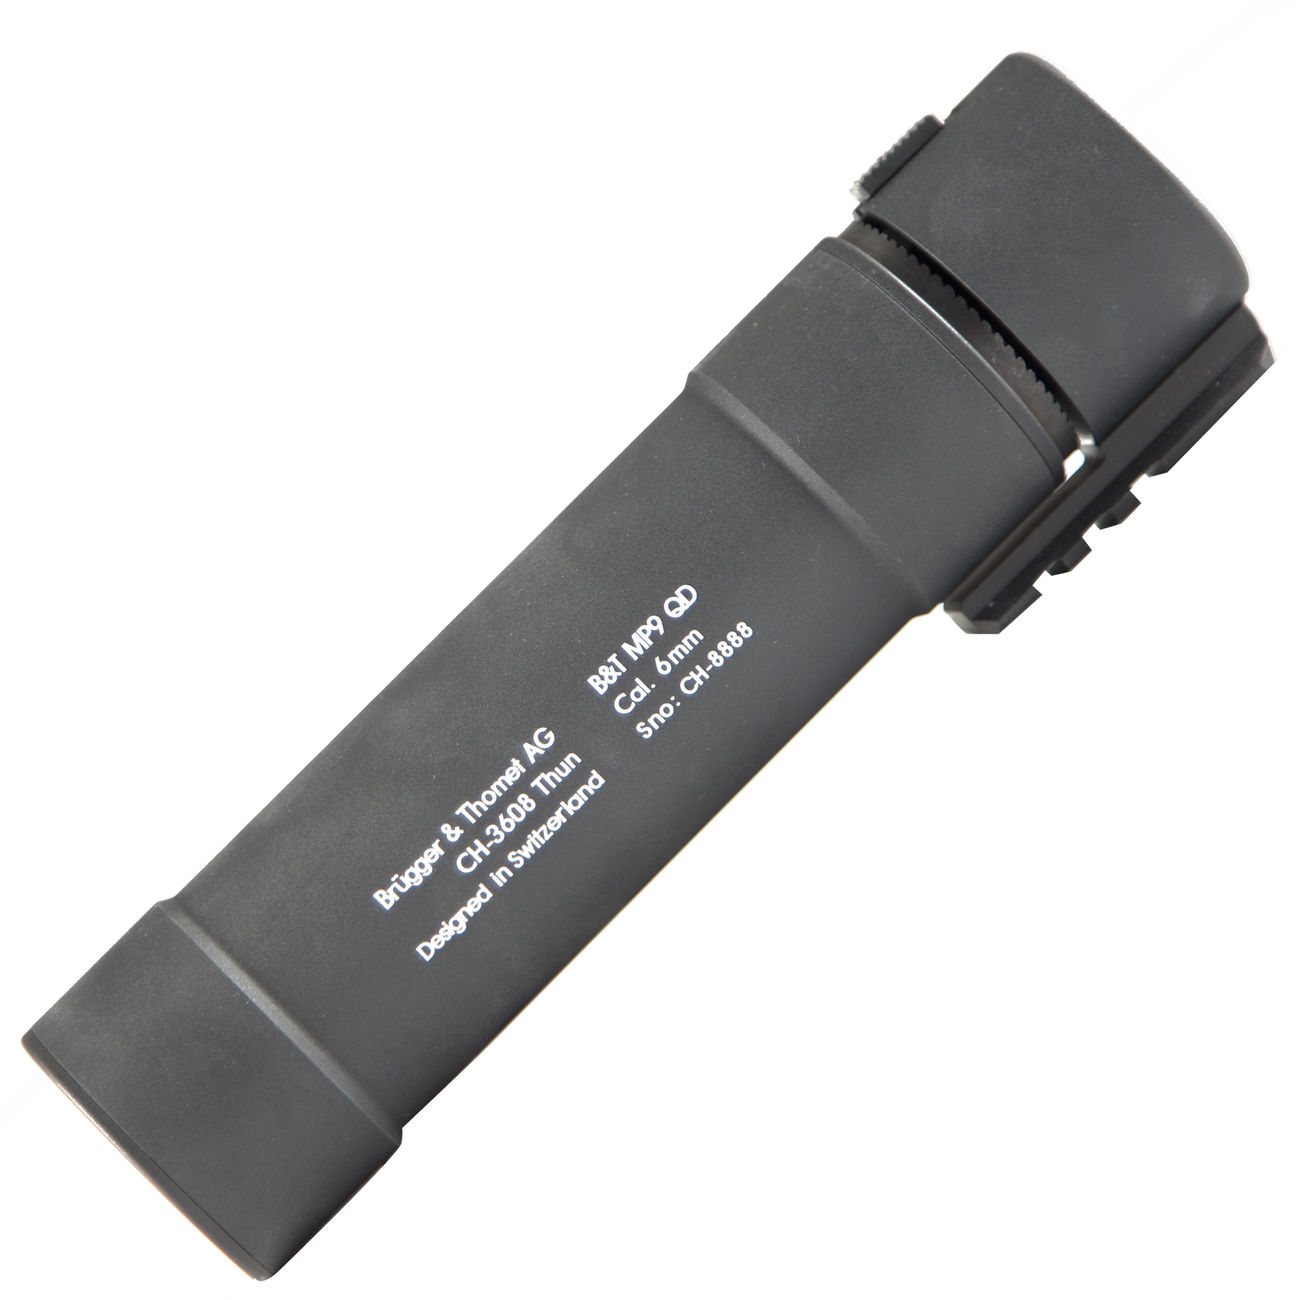 ASG B&T MP9 QD Aluminium-Silencer f. KWA MP9 GBB Serie schwarz Bild 2